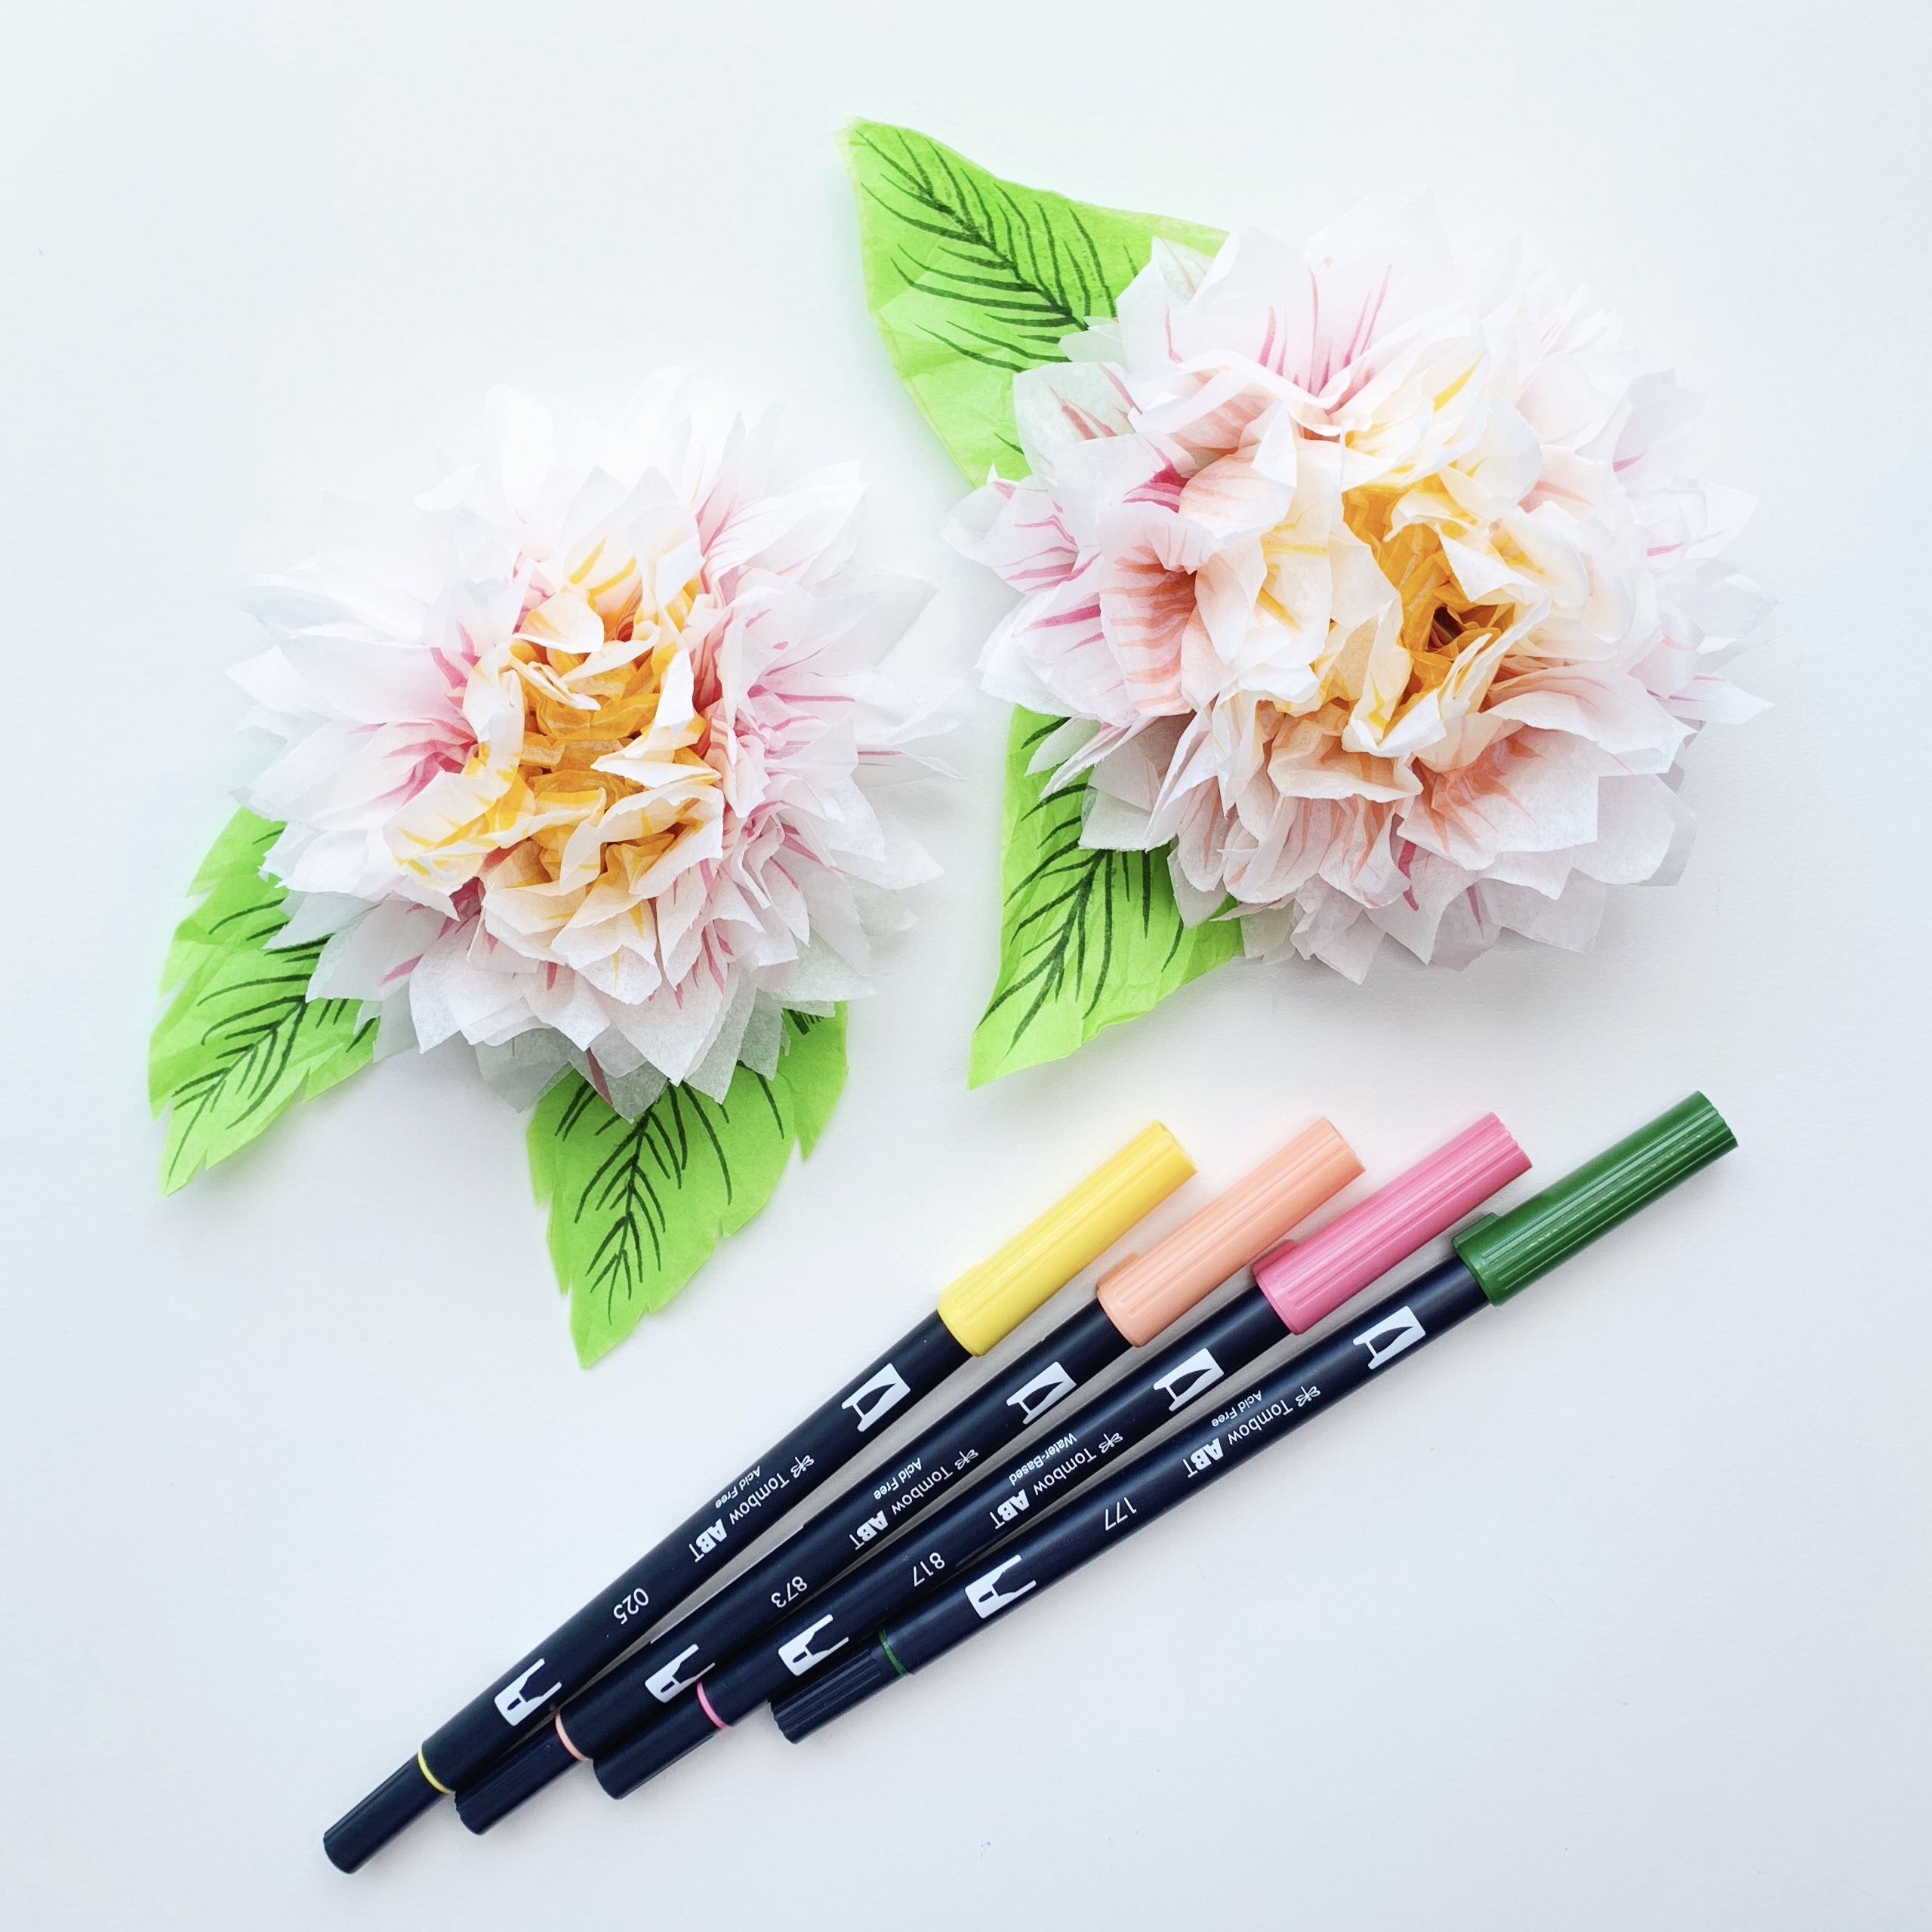 Pen + Paper Flowers: STYLING